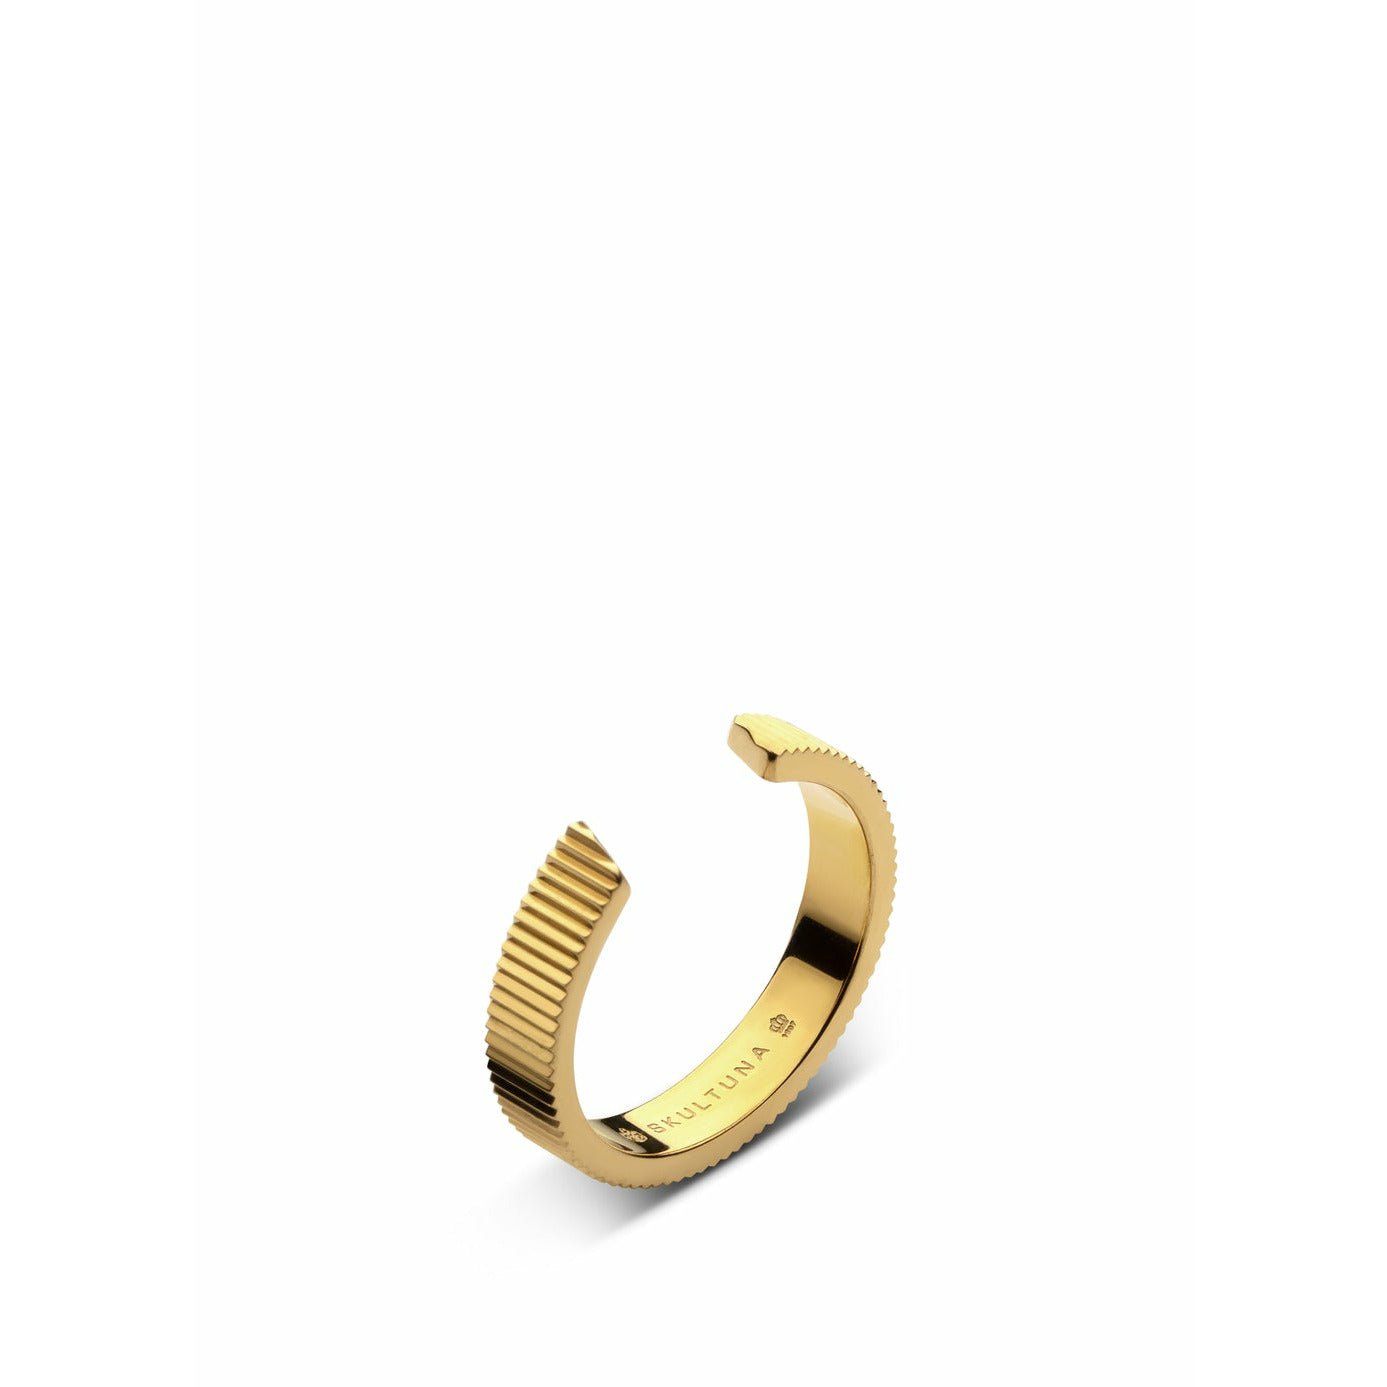 Szultuna żebrowana medium pierścienia 316 L stalowe złoto, Ø1,73 cm